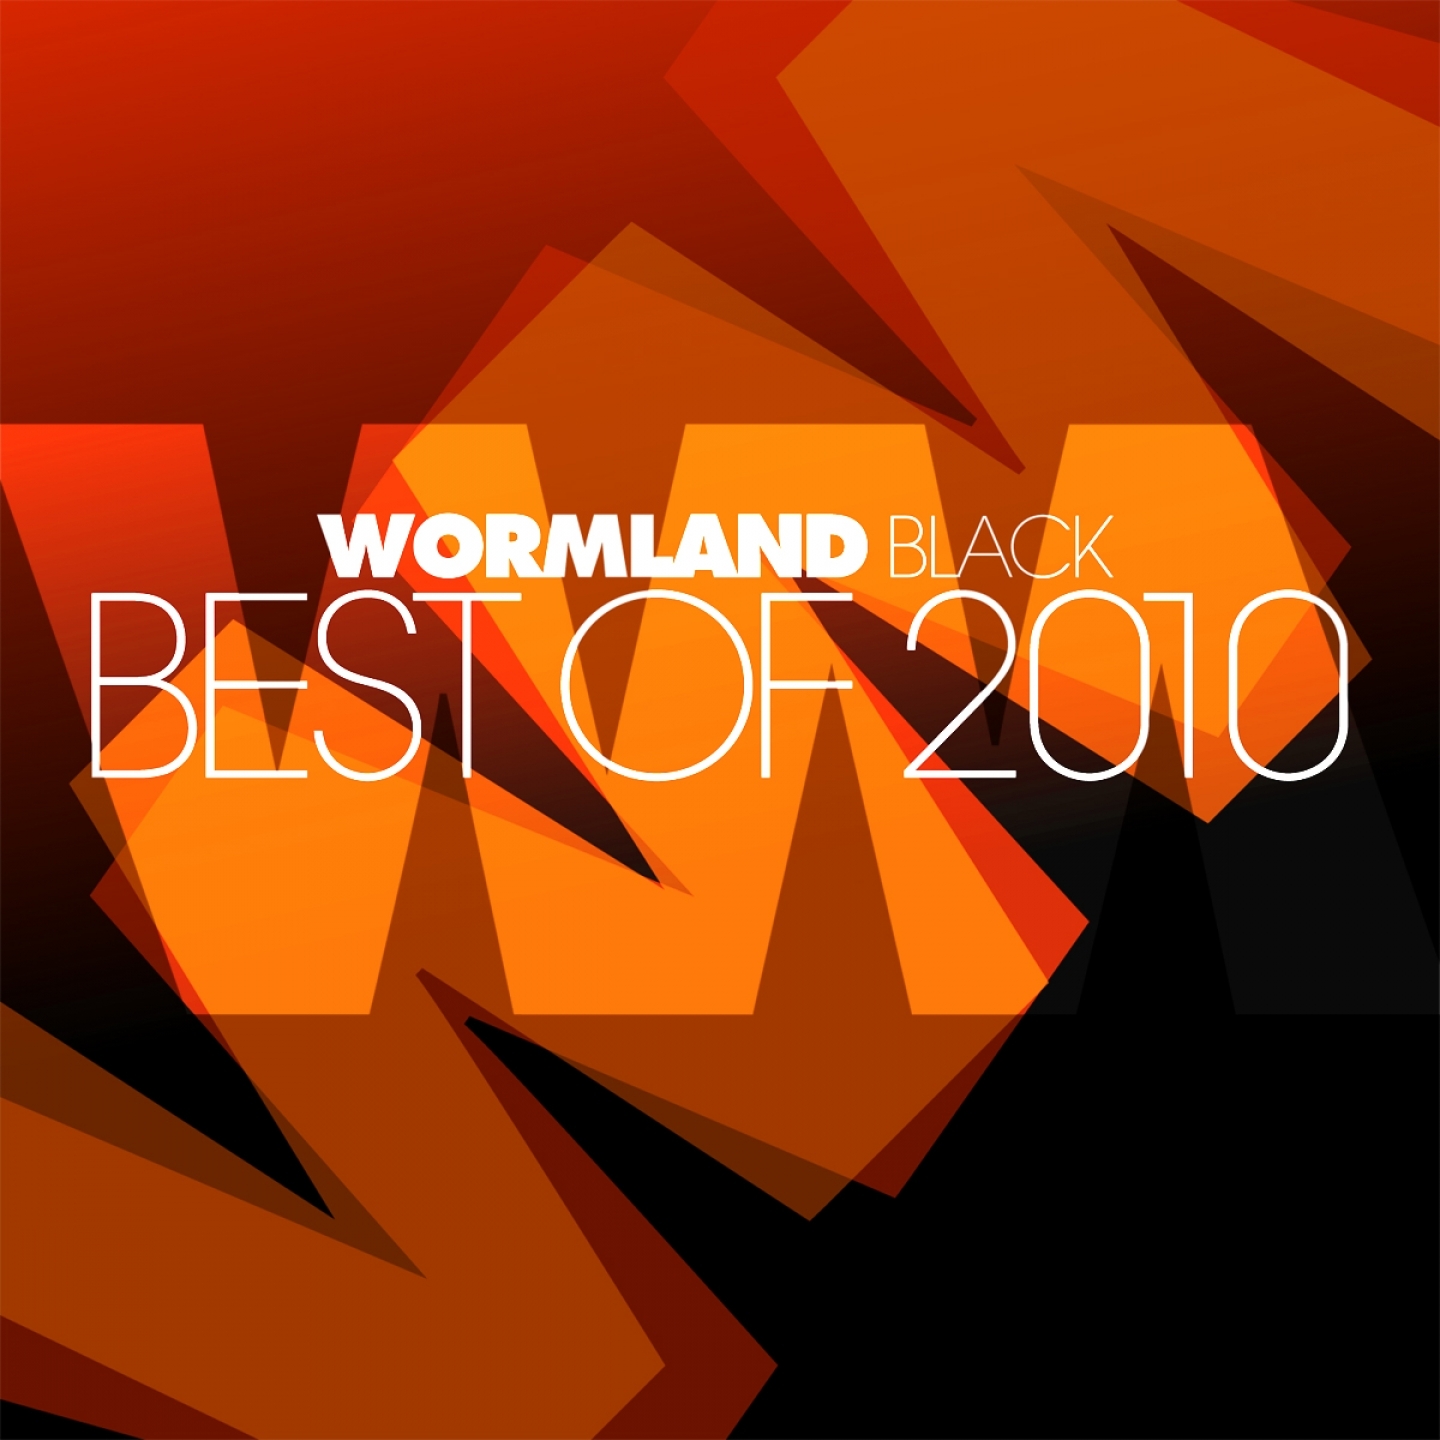 Wormland Black, Best of 2010